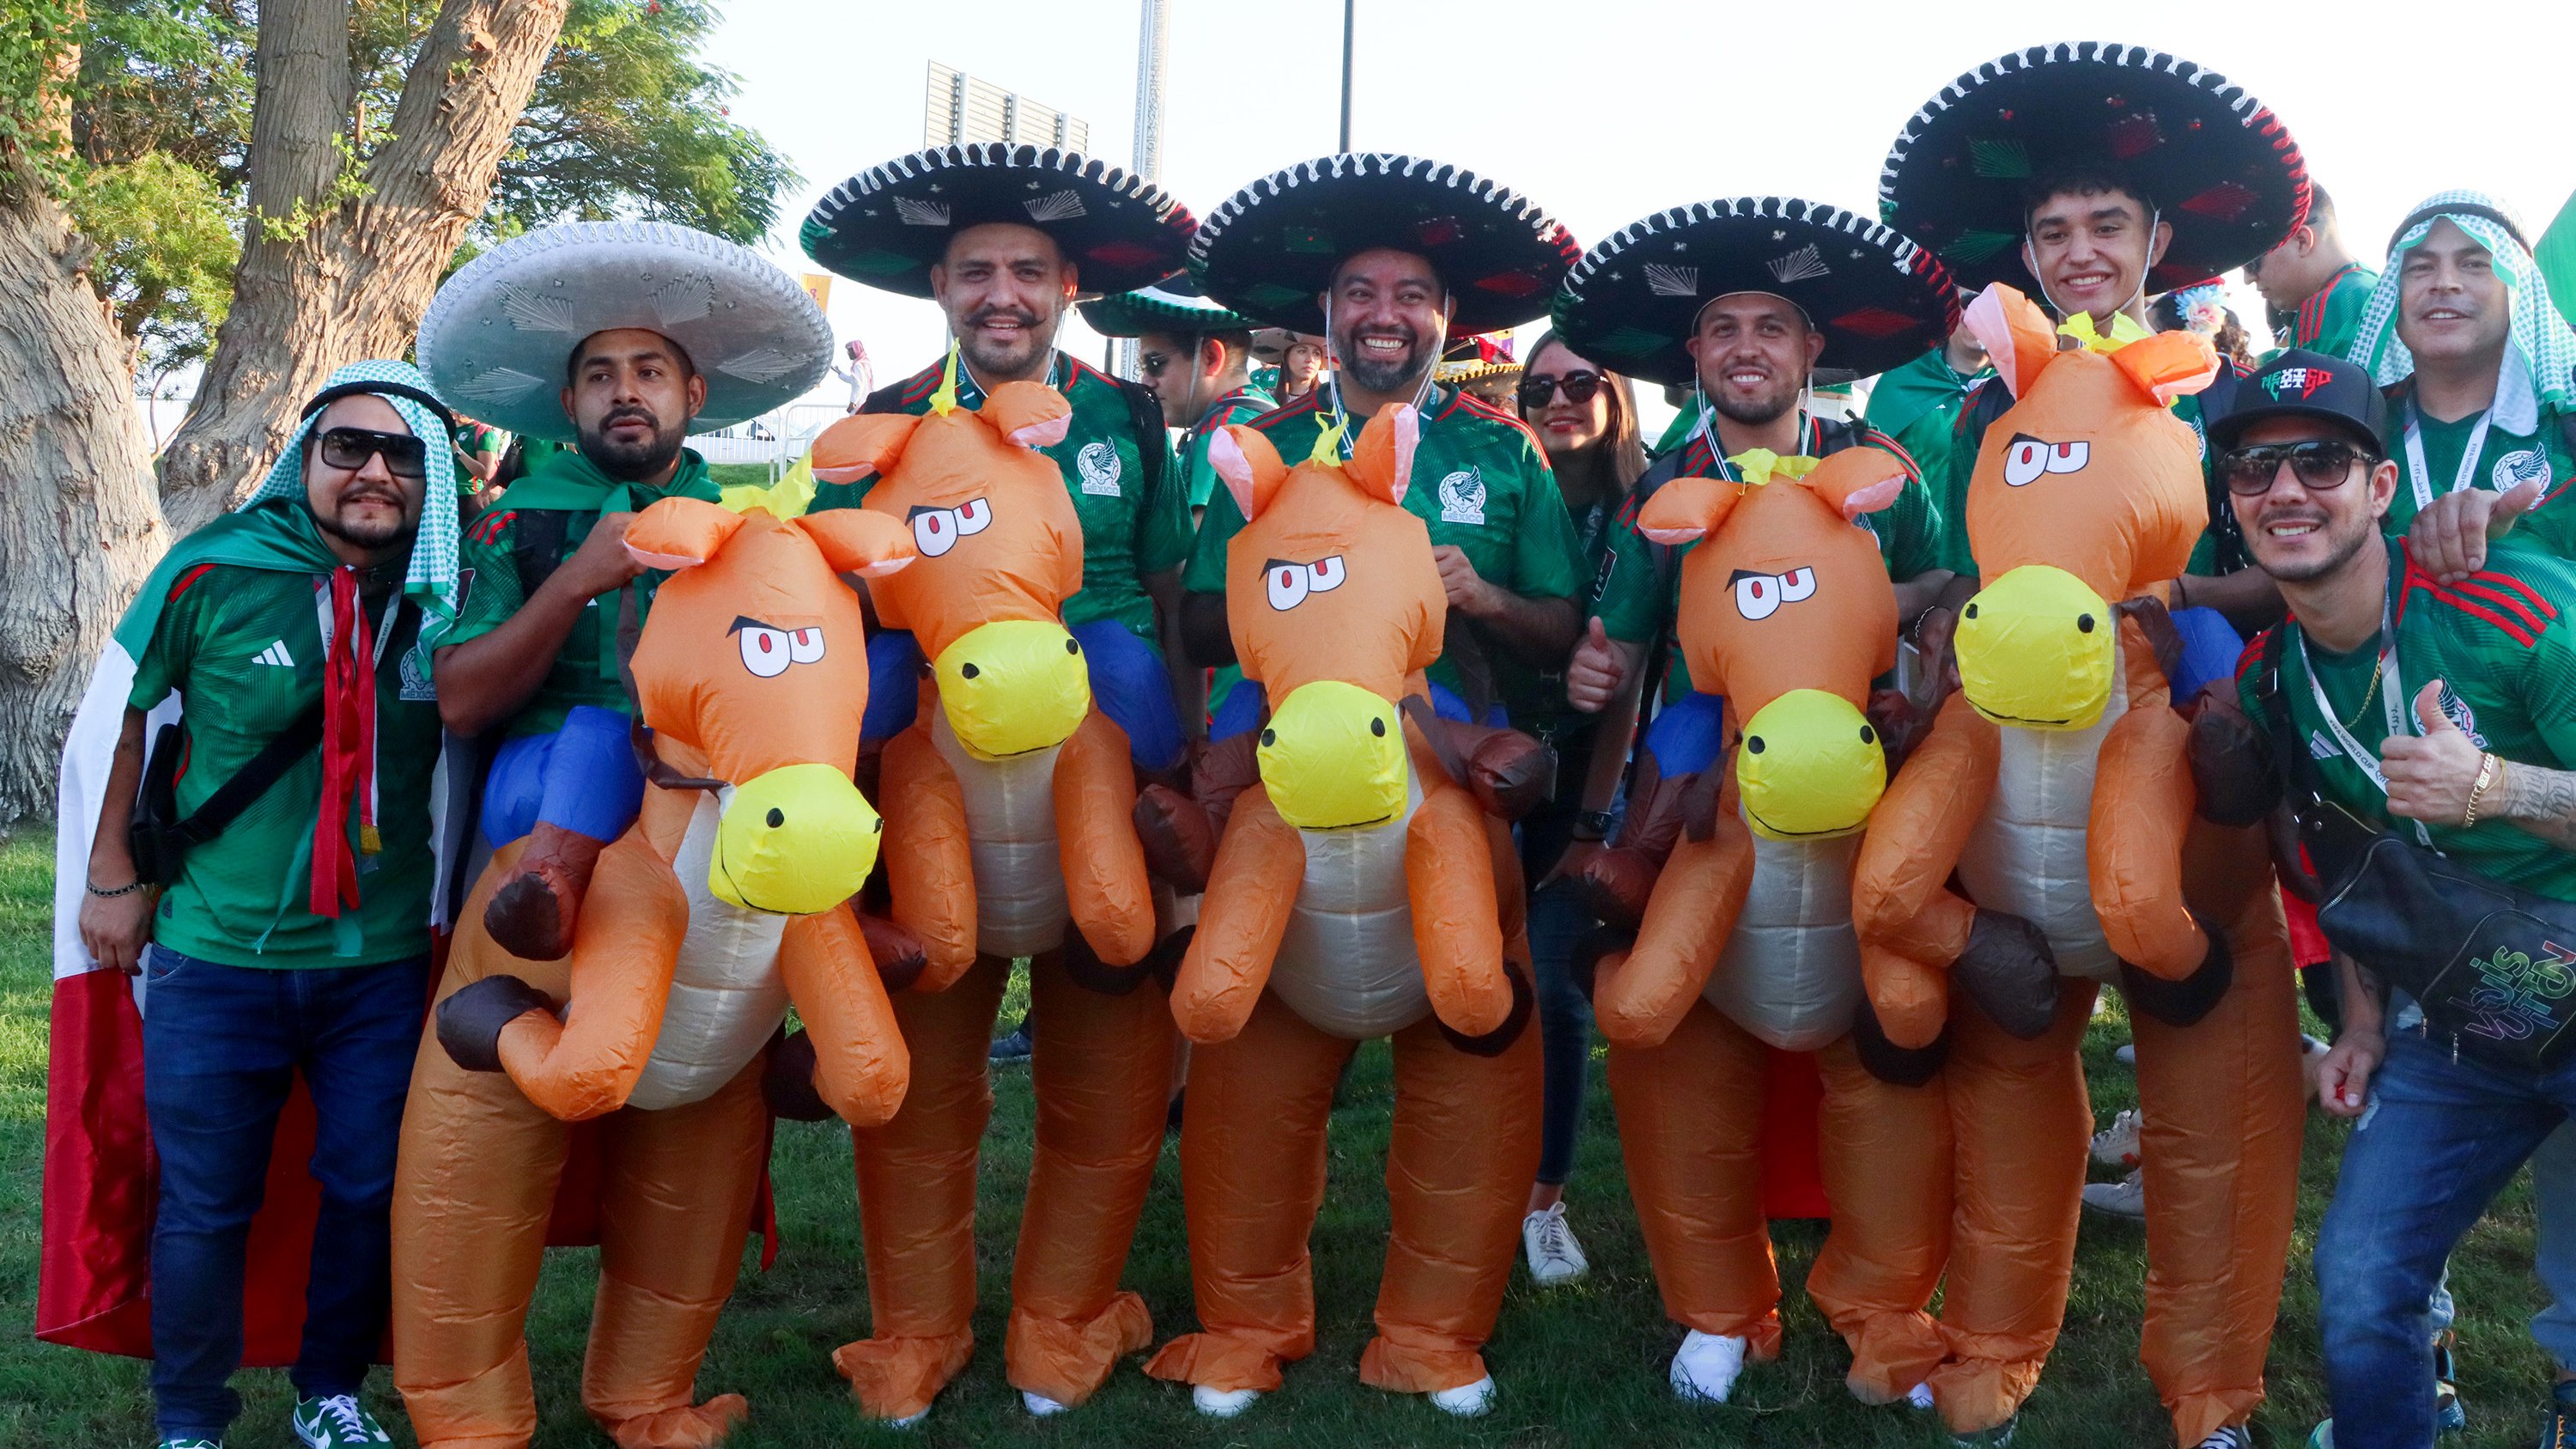 التعادل السلبي يحسم مواجهة المكسيك ضد بولندا في كأس العالم